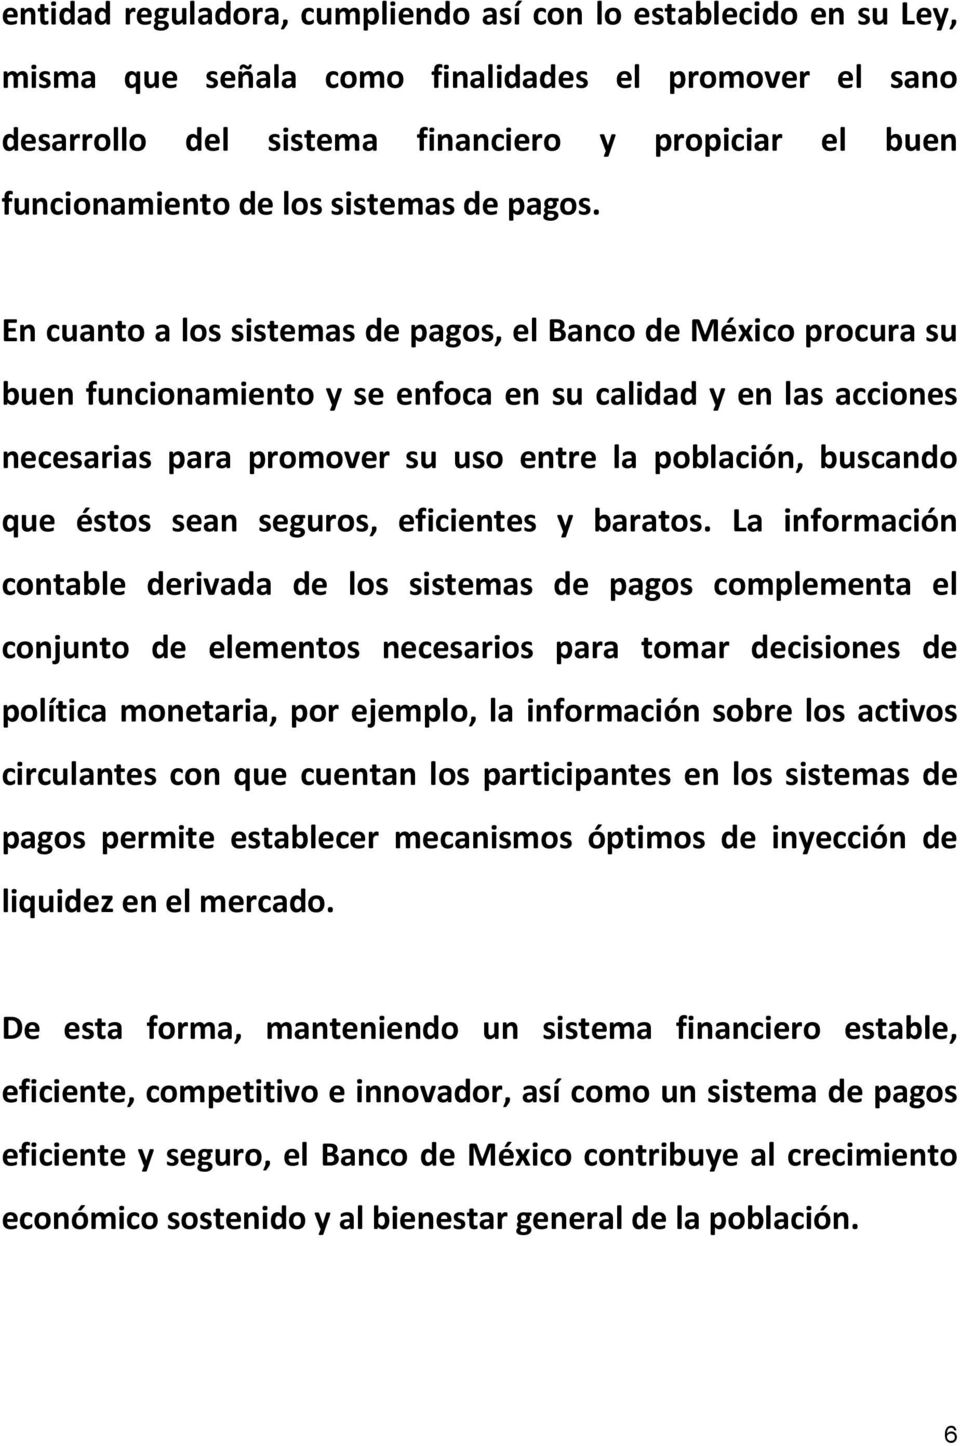 En cuanto a los sistemas de pagos, el Banco de México procura su buen funcionamiento y se enfoca en su calidad y en las acciones necesarias para promover su uso entre la población, buscando que éstos